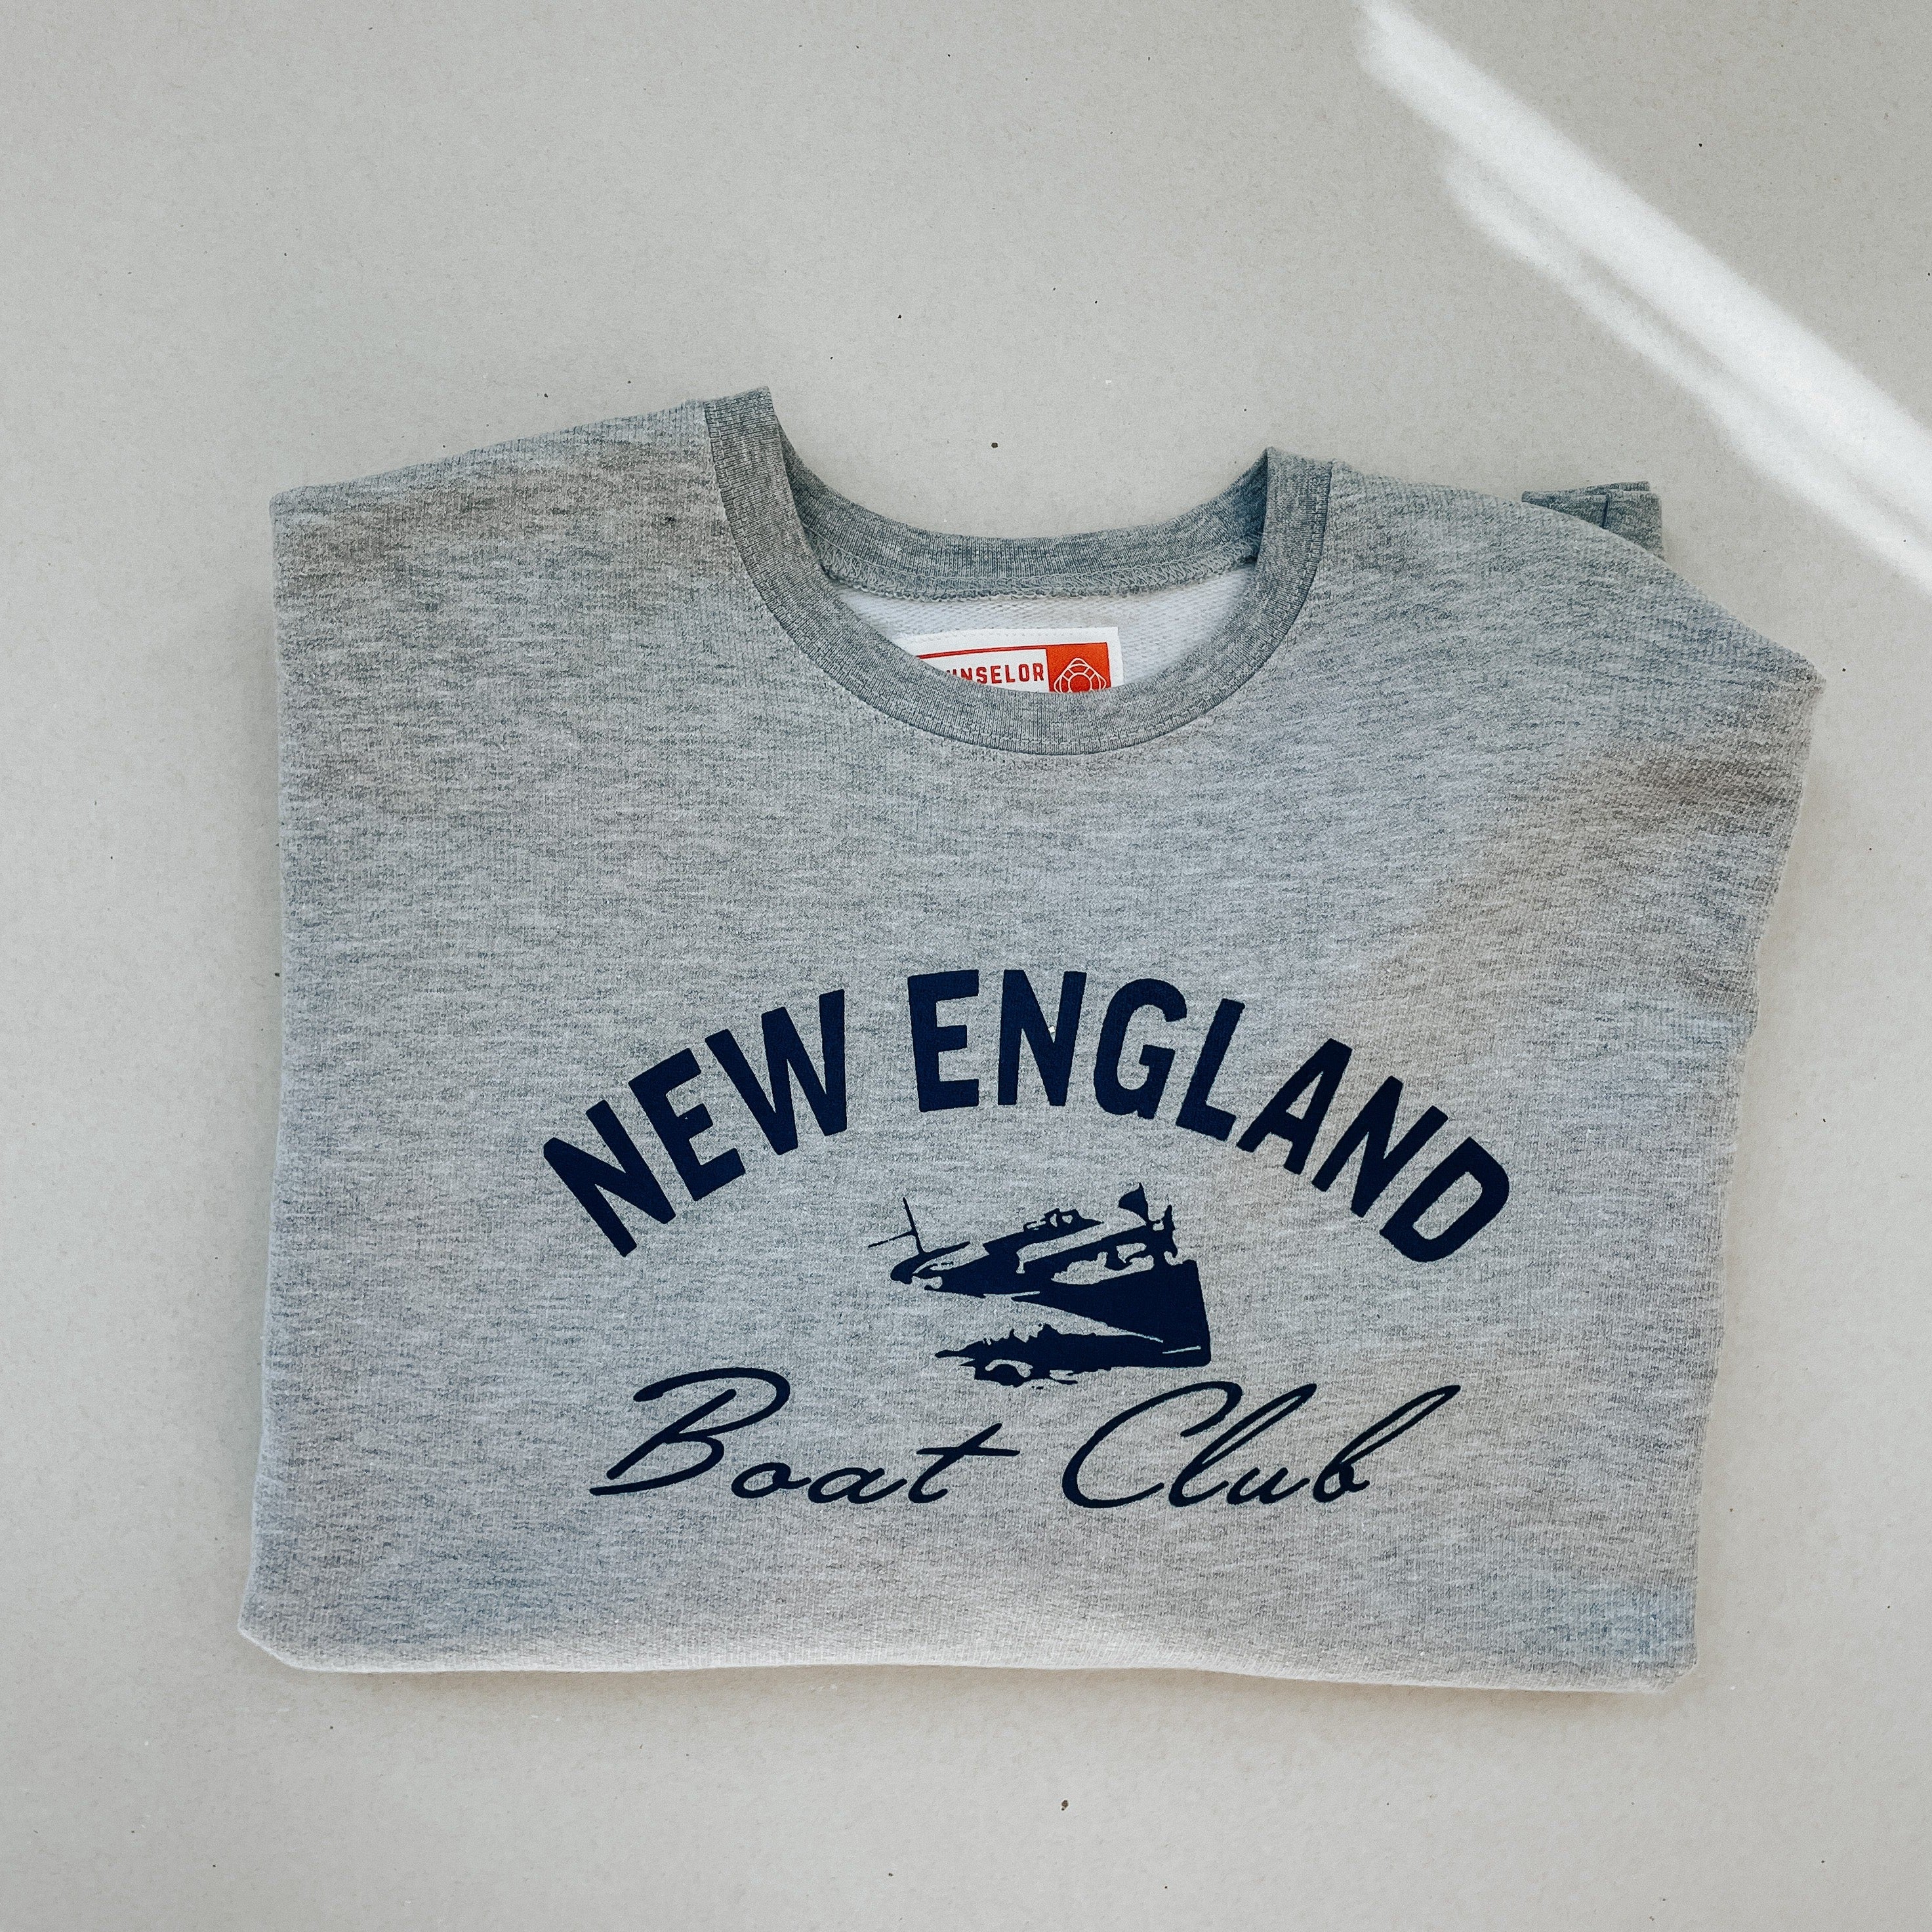 New England Boat Club